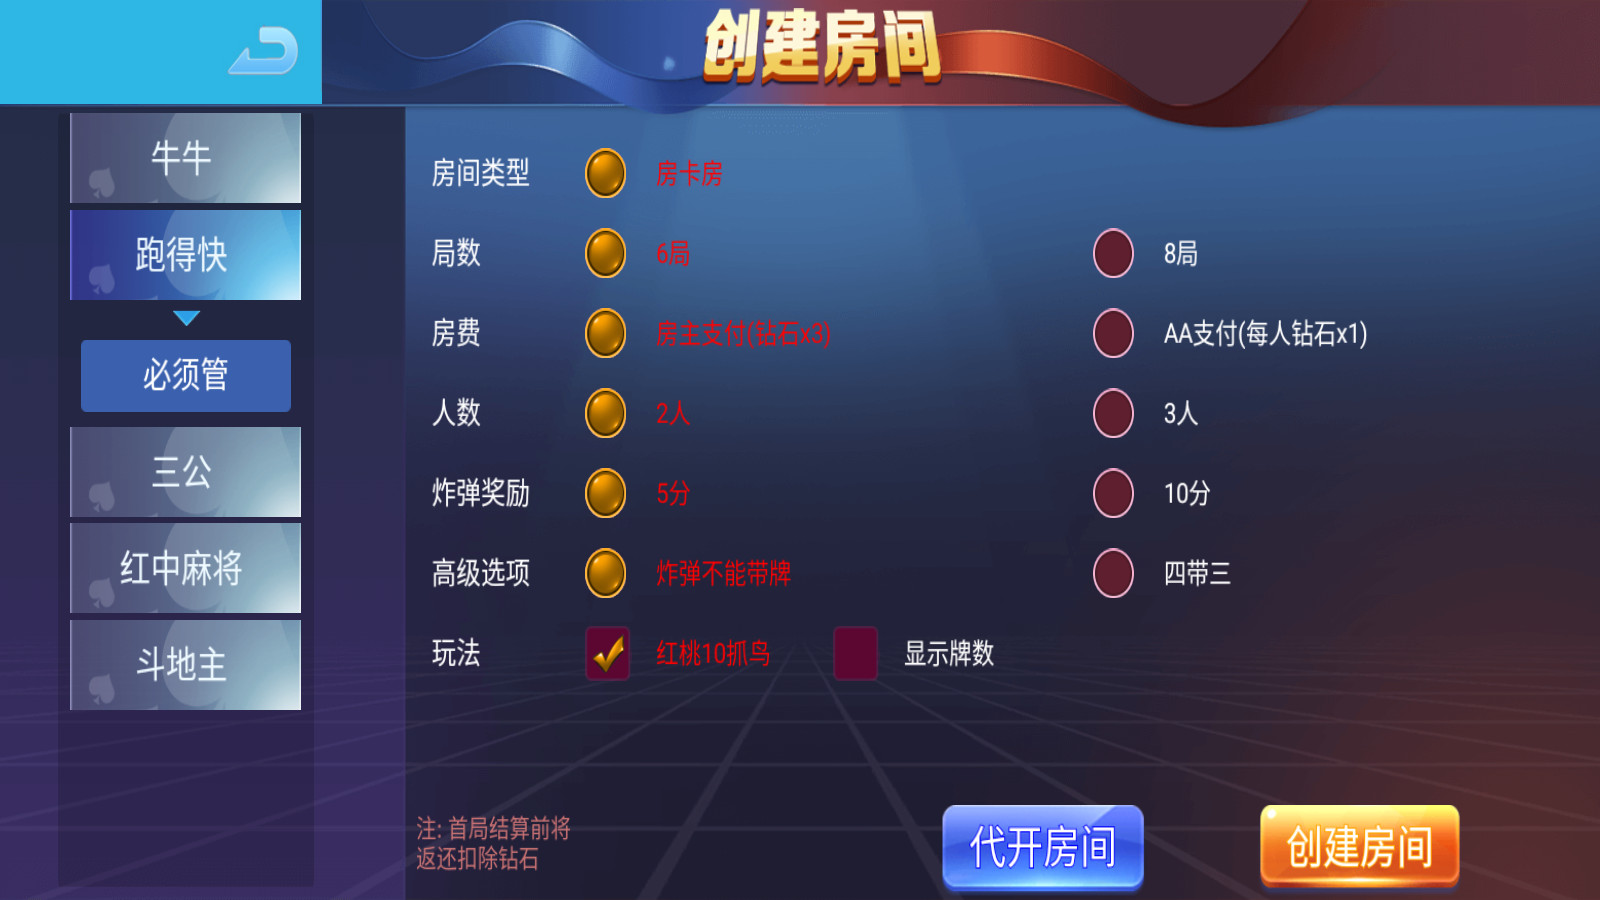 新版五游大联盟运营版棋牌组件 UI美观大方插图2